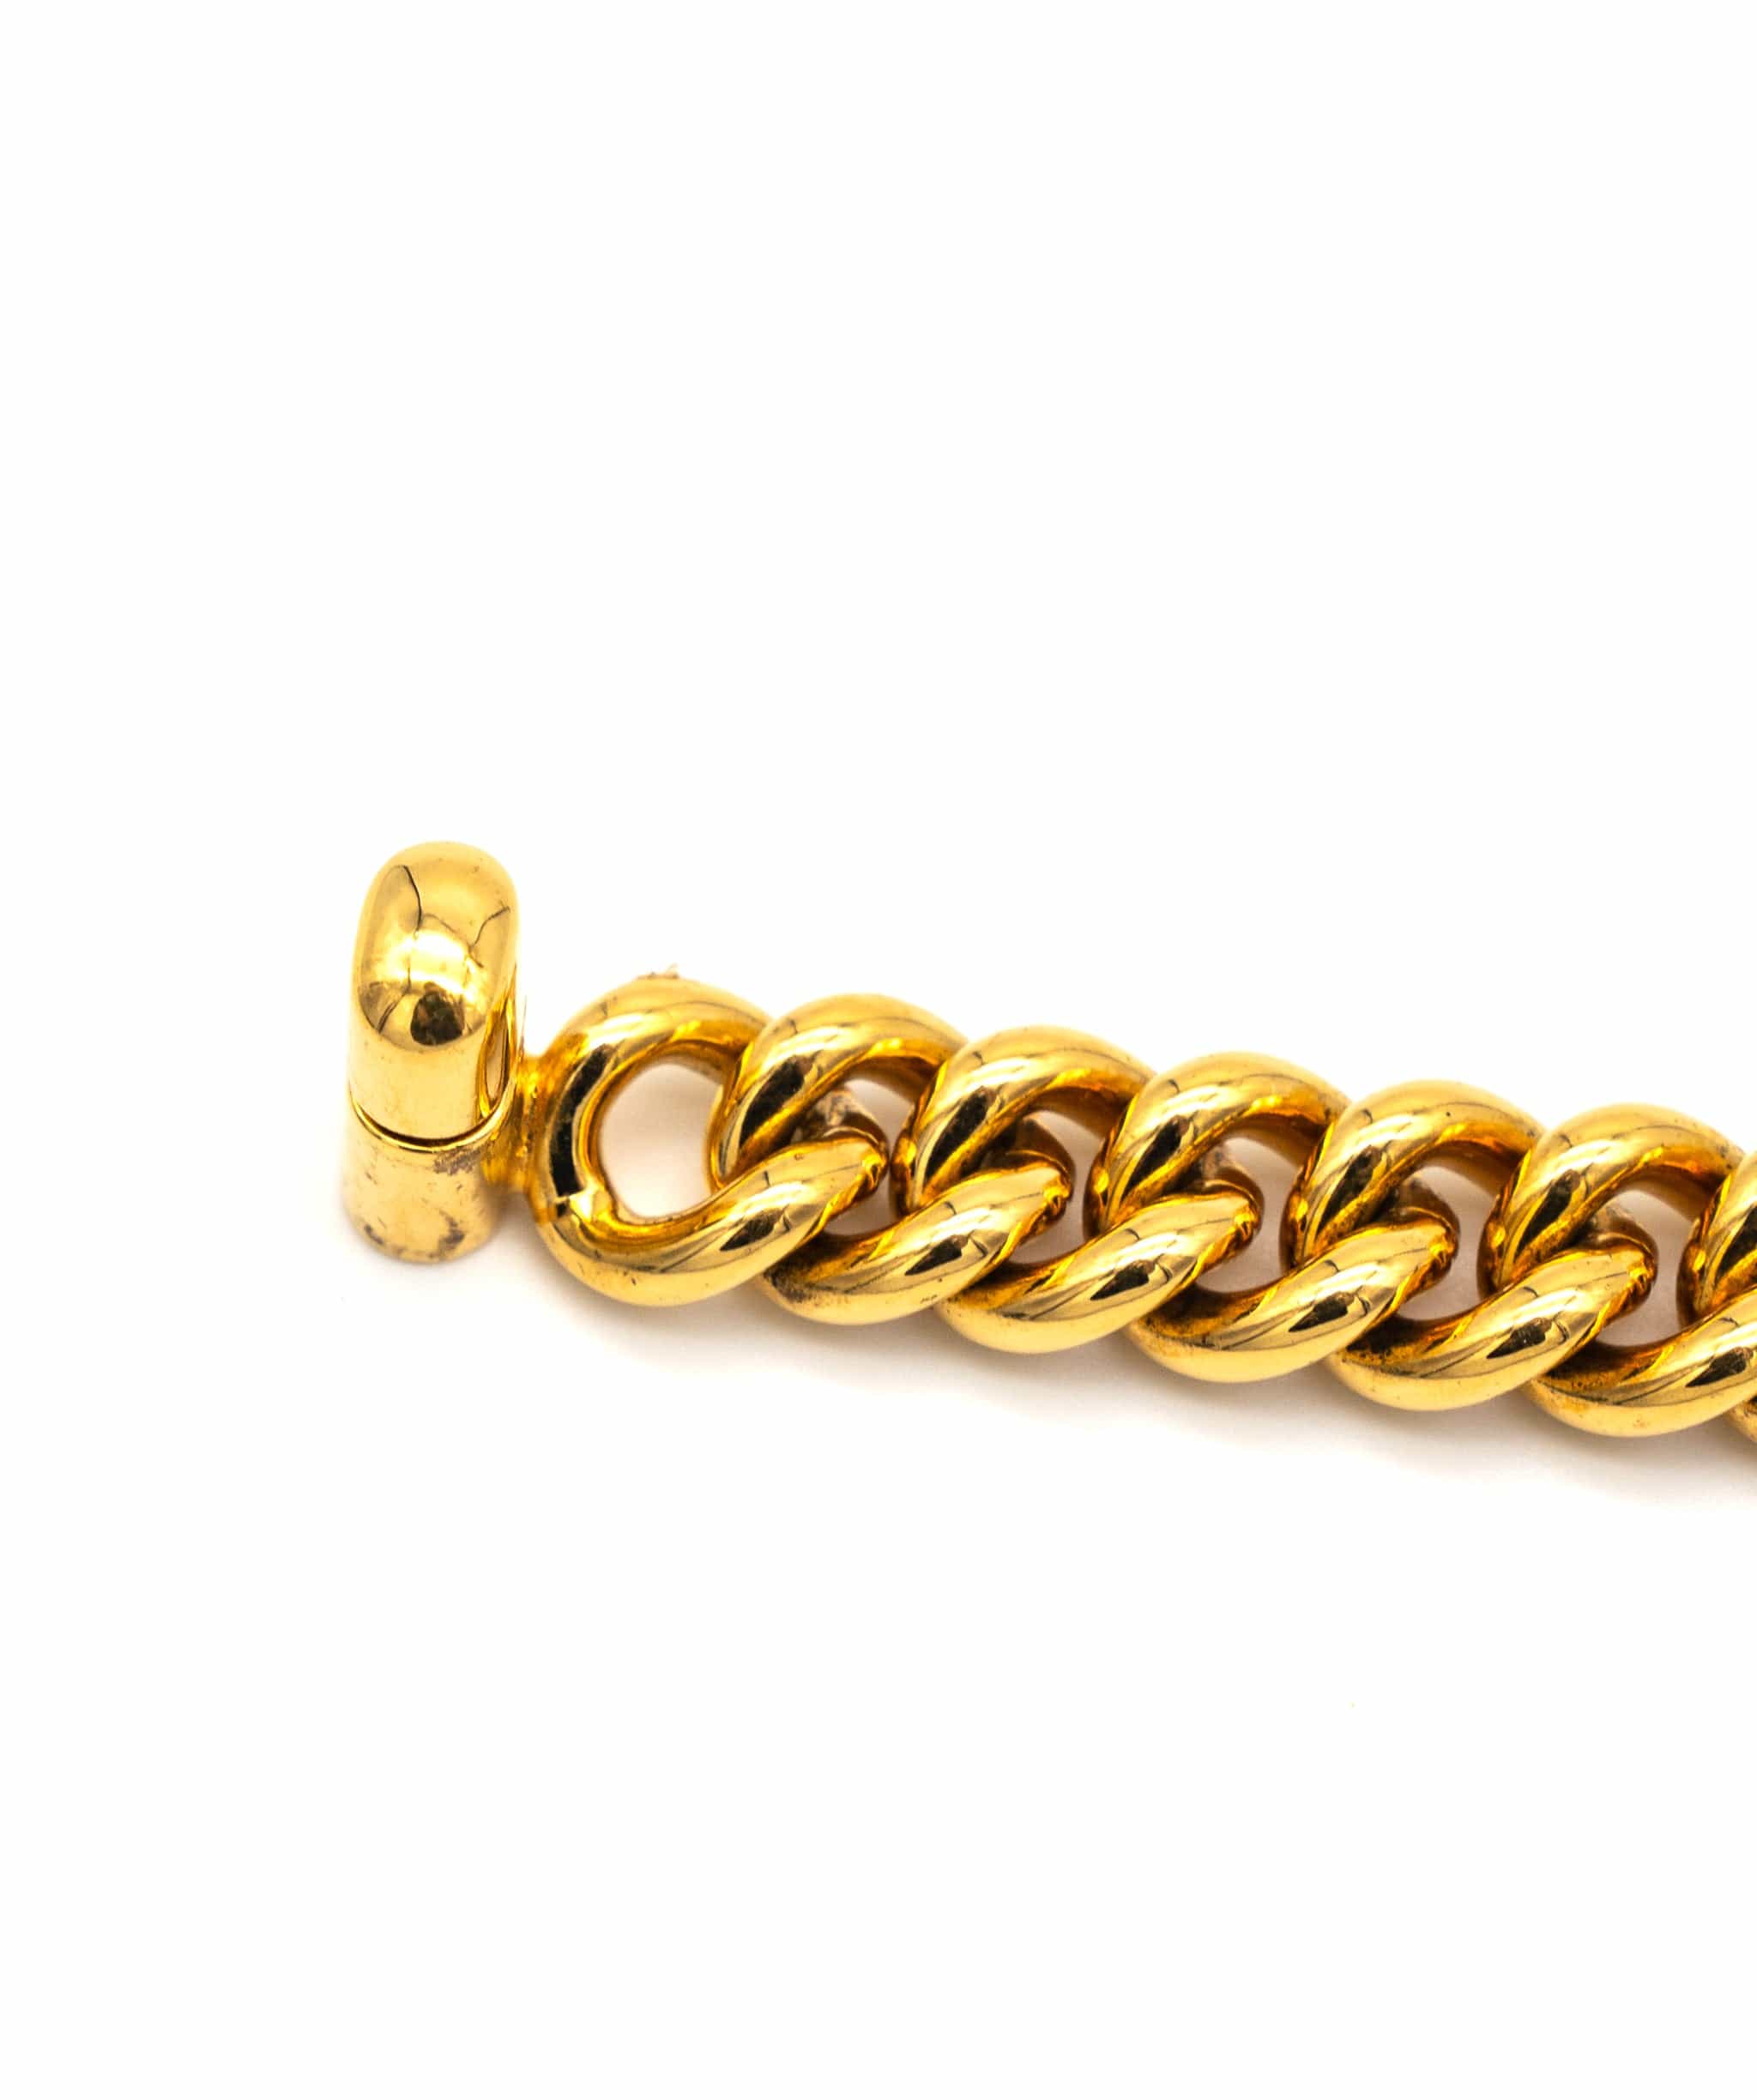 Chanel Chanel Turn Lock Bracelet - 3971221